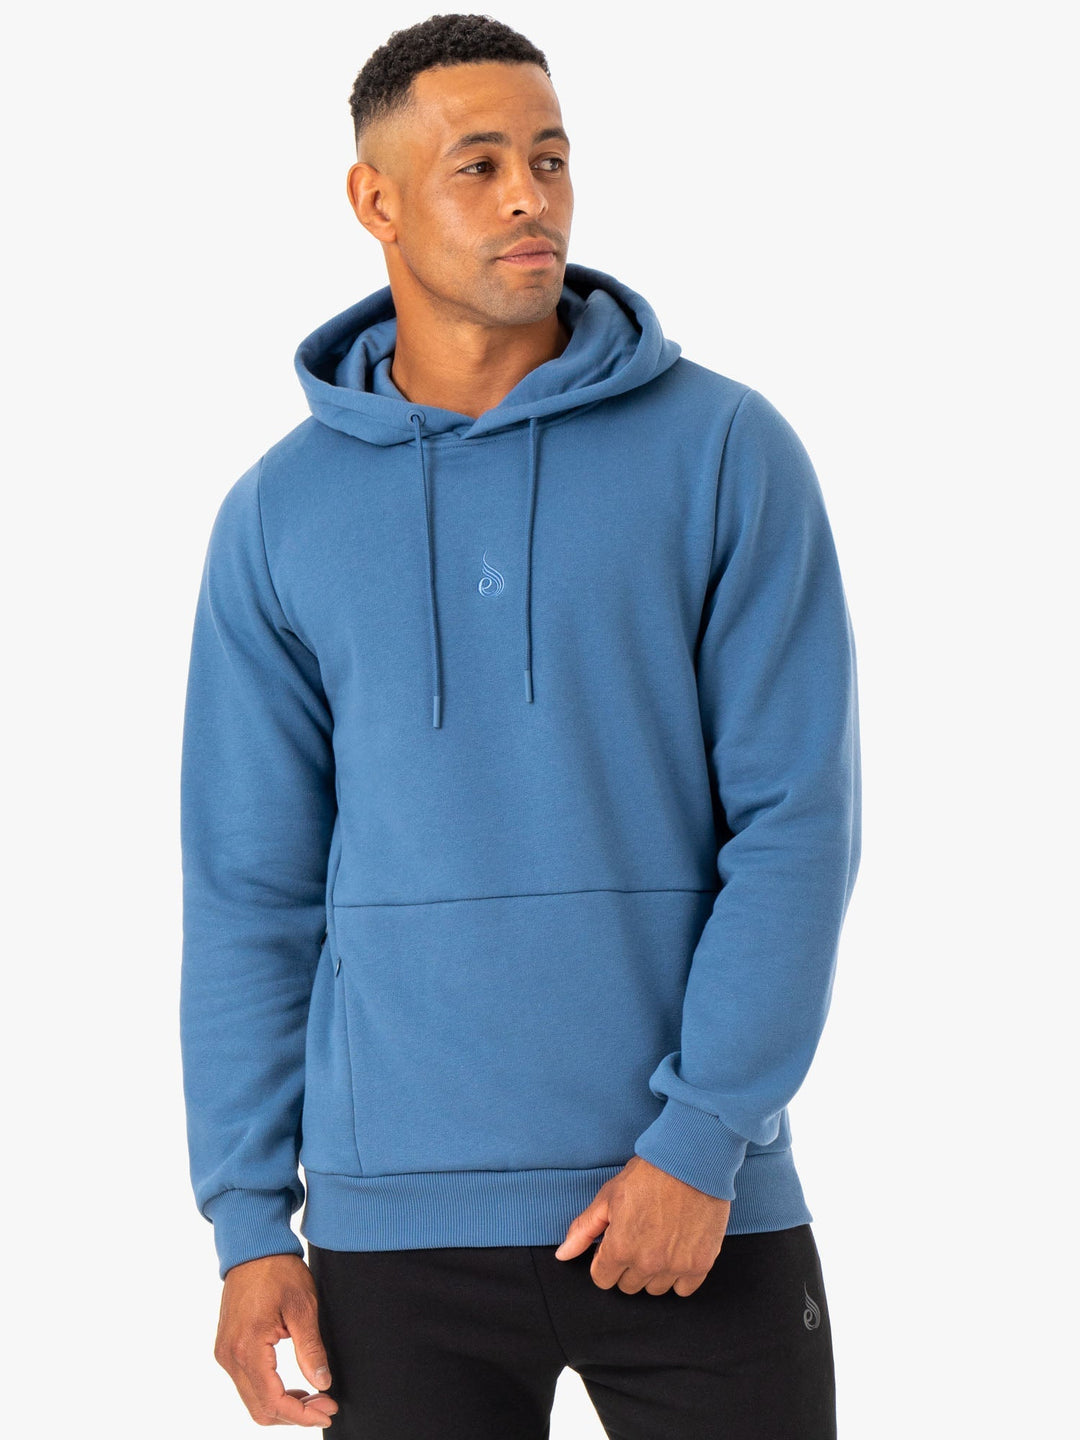 Restore Pullover Hoodie - Blue Clothing Ryderwear 